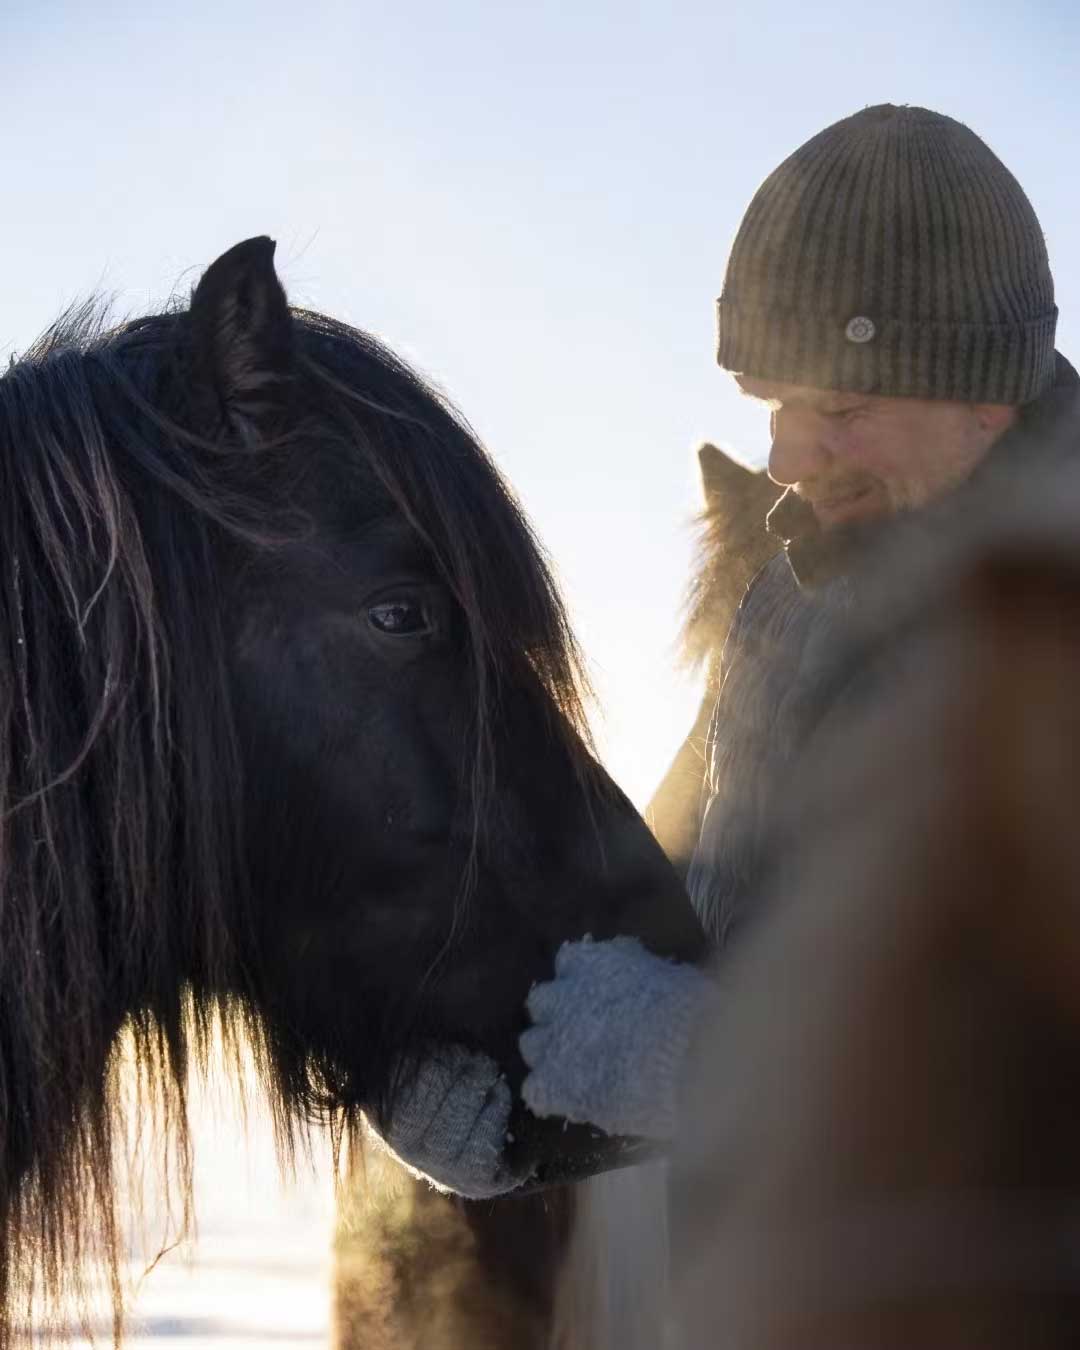 Photo Courtesy of the Icelandic Horse